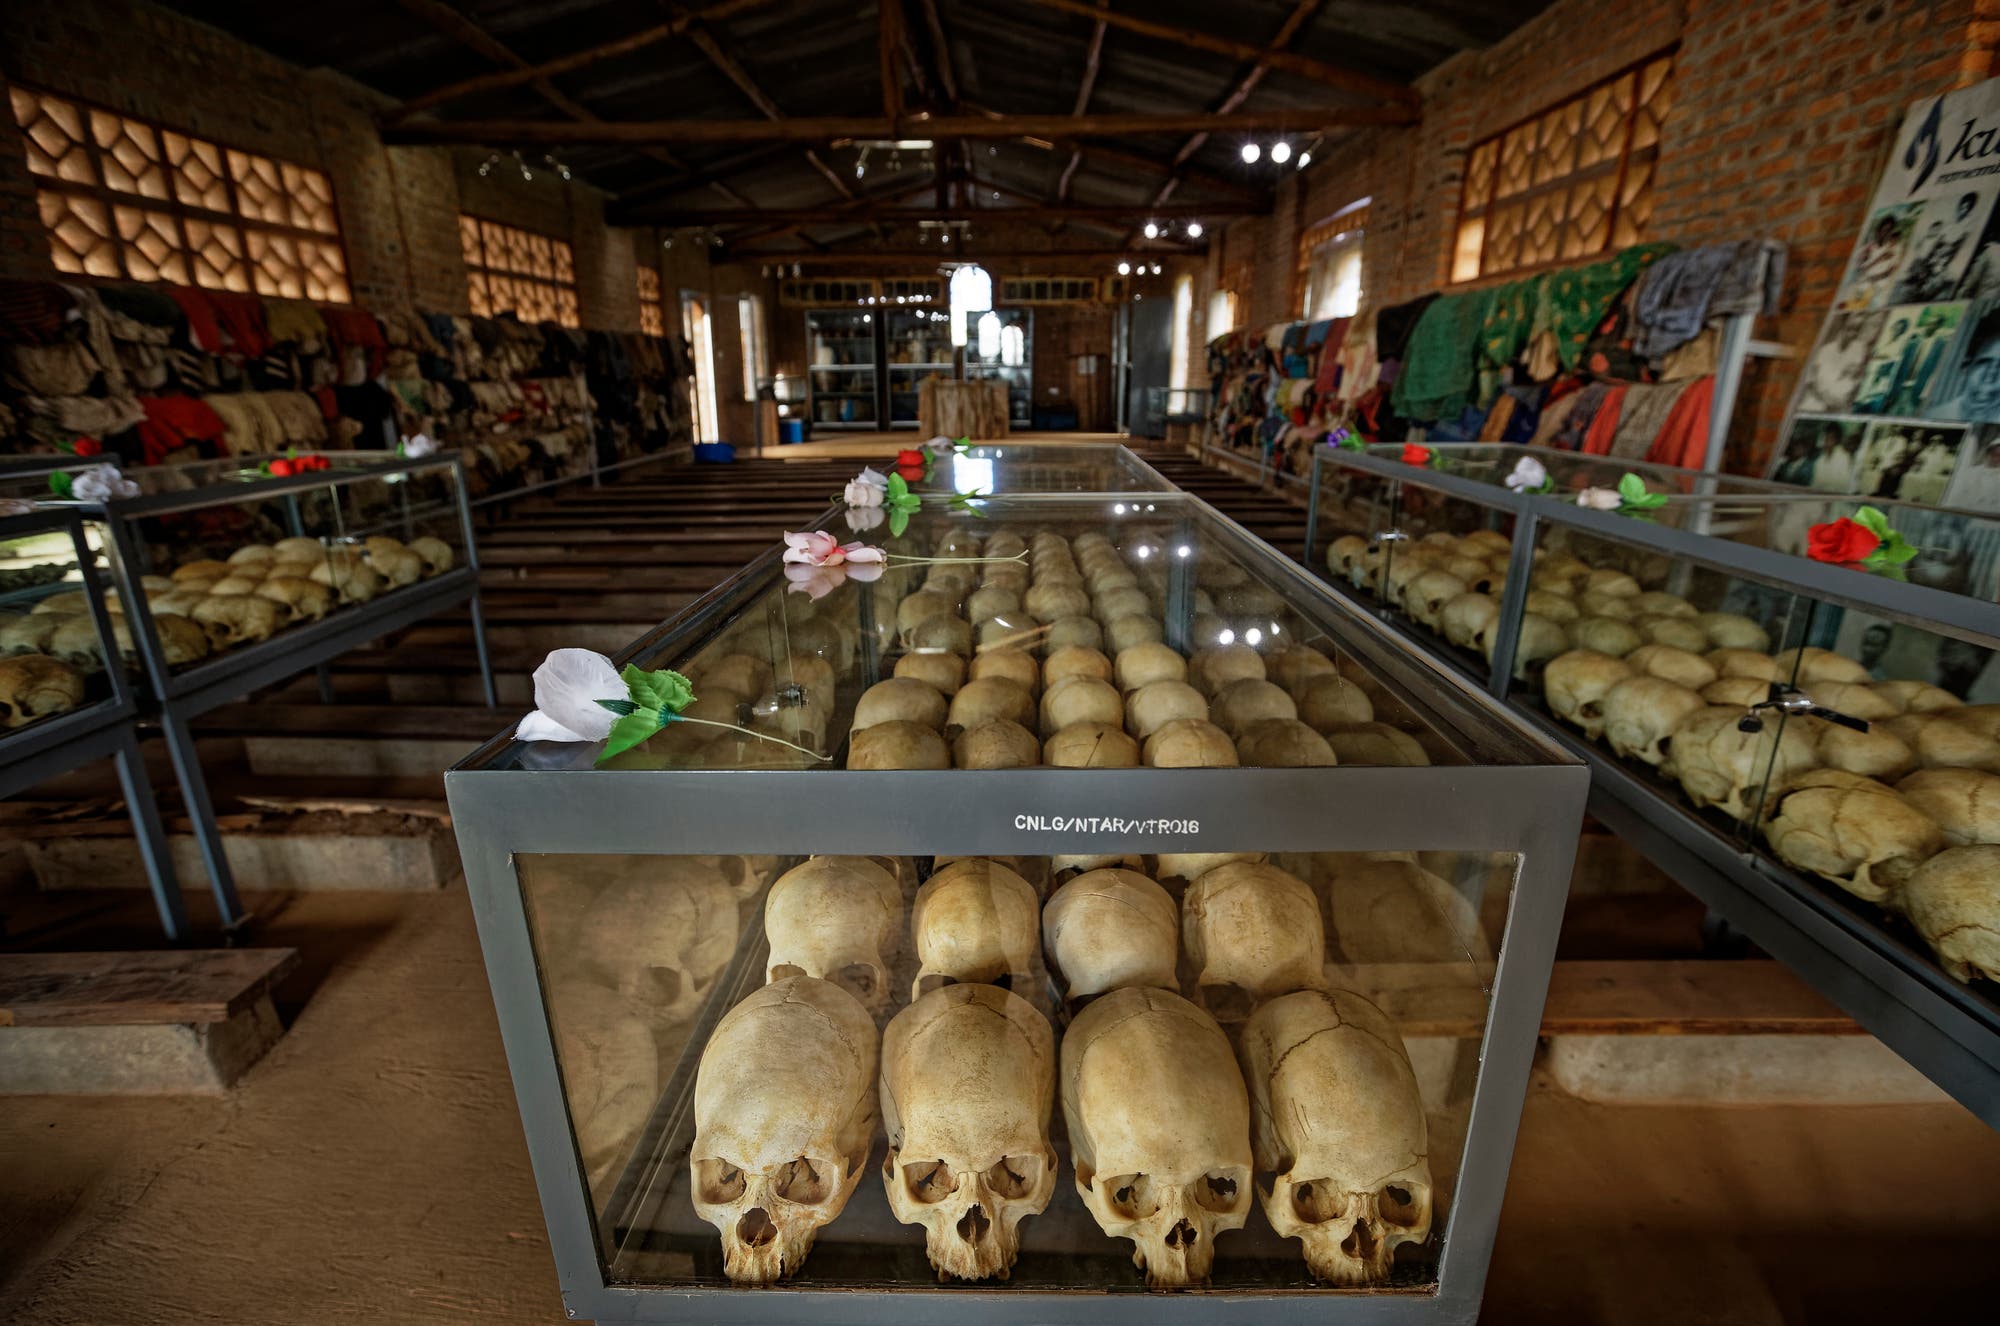 Auf Regalen in einer Kirche sind reihenweise Totenschädel ausgestellt